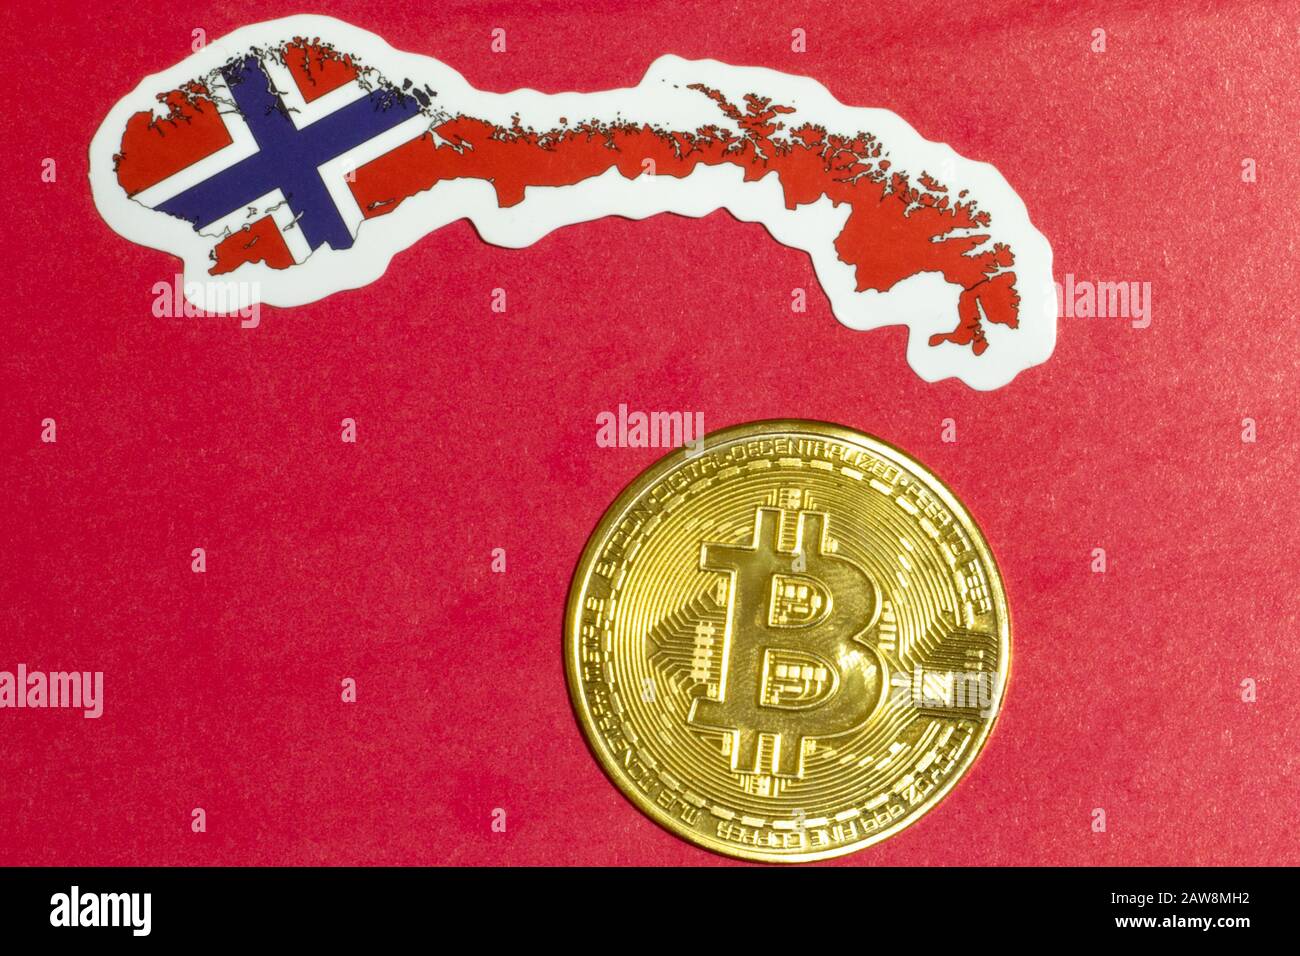 Norwegen-Flag mit Bitcoin-Wohnung zur Veranschaulichung. Cryptocurrency btc-Rechtskonzept Stockfoto